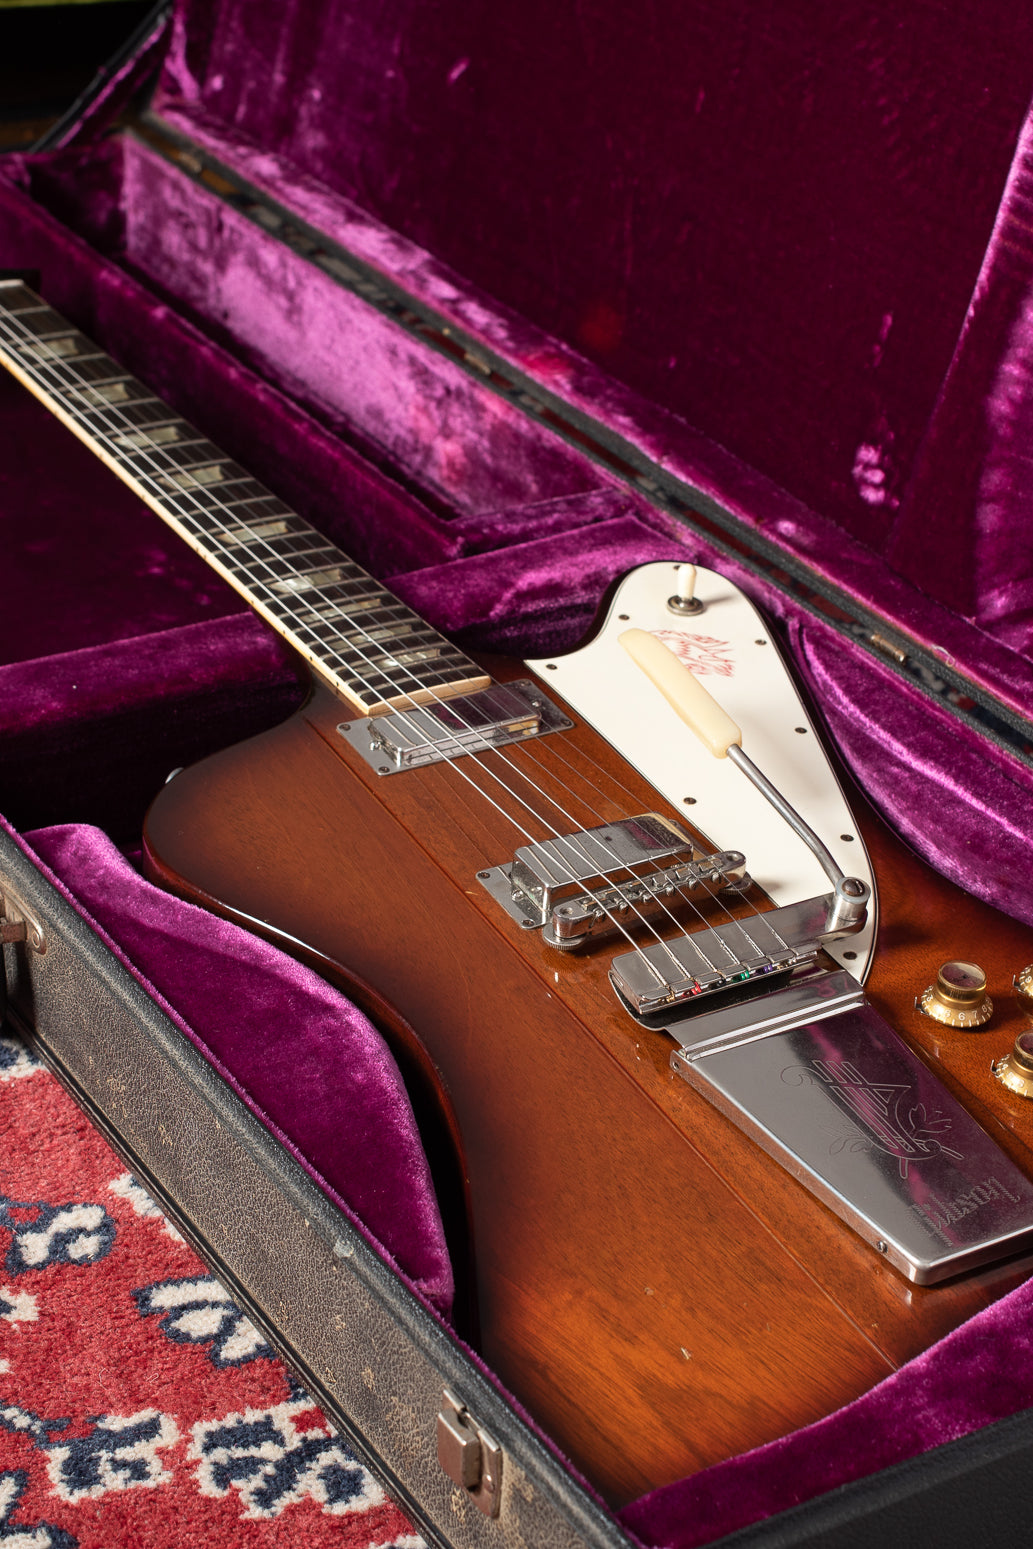 1964 Gibson Firebird V in case